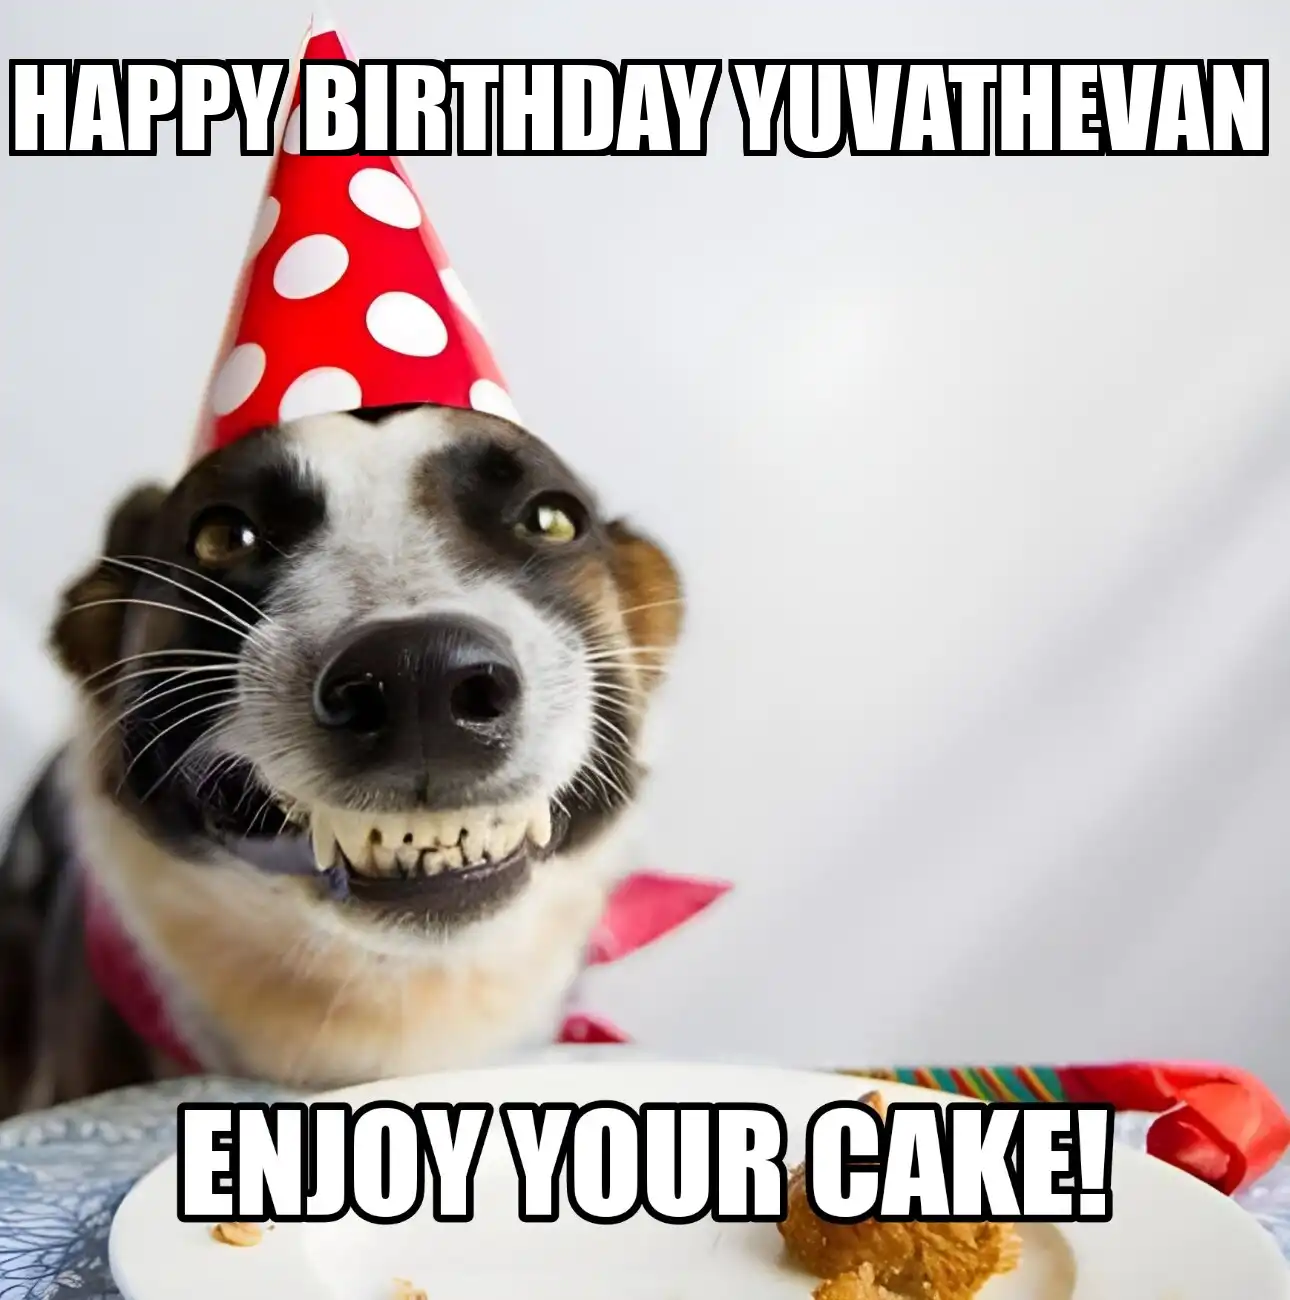 Happy Birthday Yuvathevan Enjoy Your Cake Dog Meme